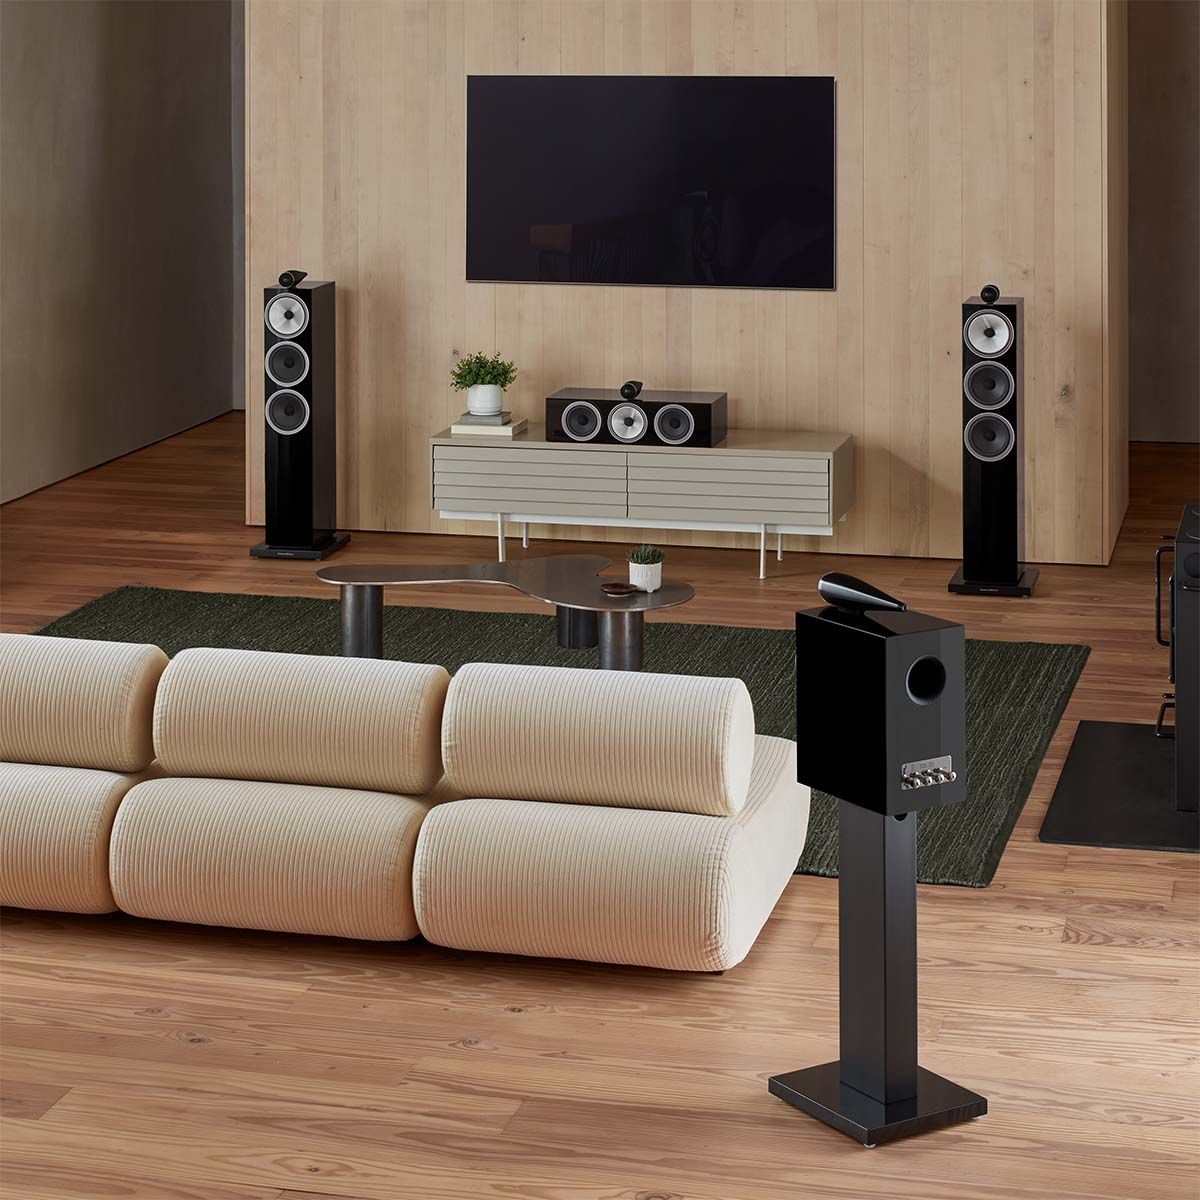 Photo showing Bowers & Wilkins 703 S3 3-Way Floorstanding Loudspeakers set up in living room being used as home theater speakers